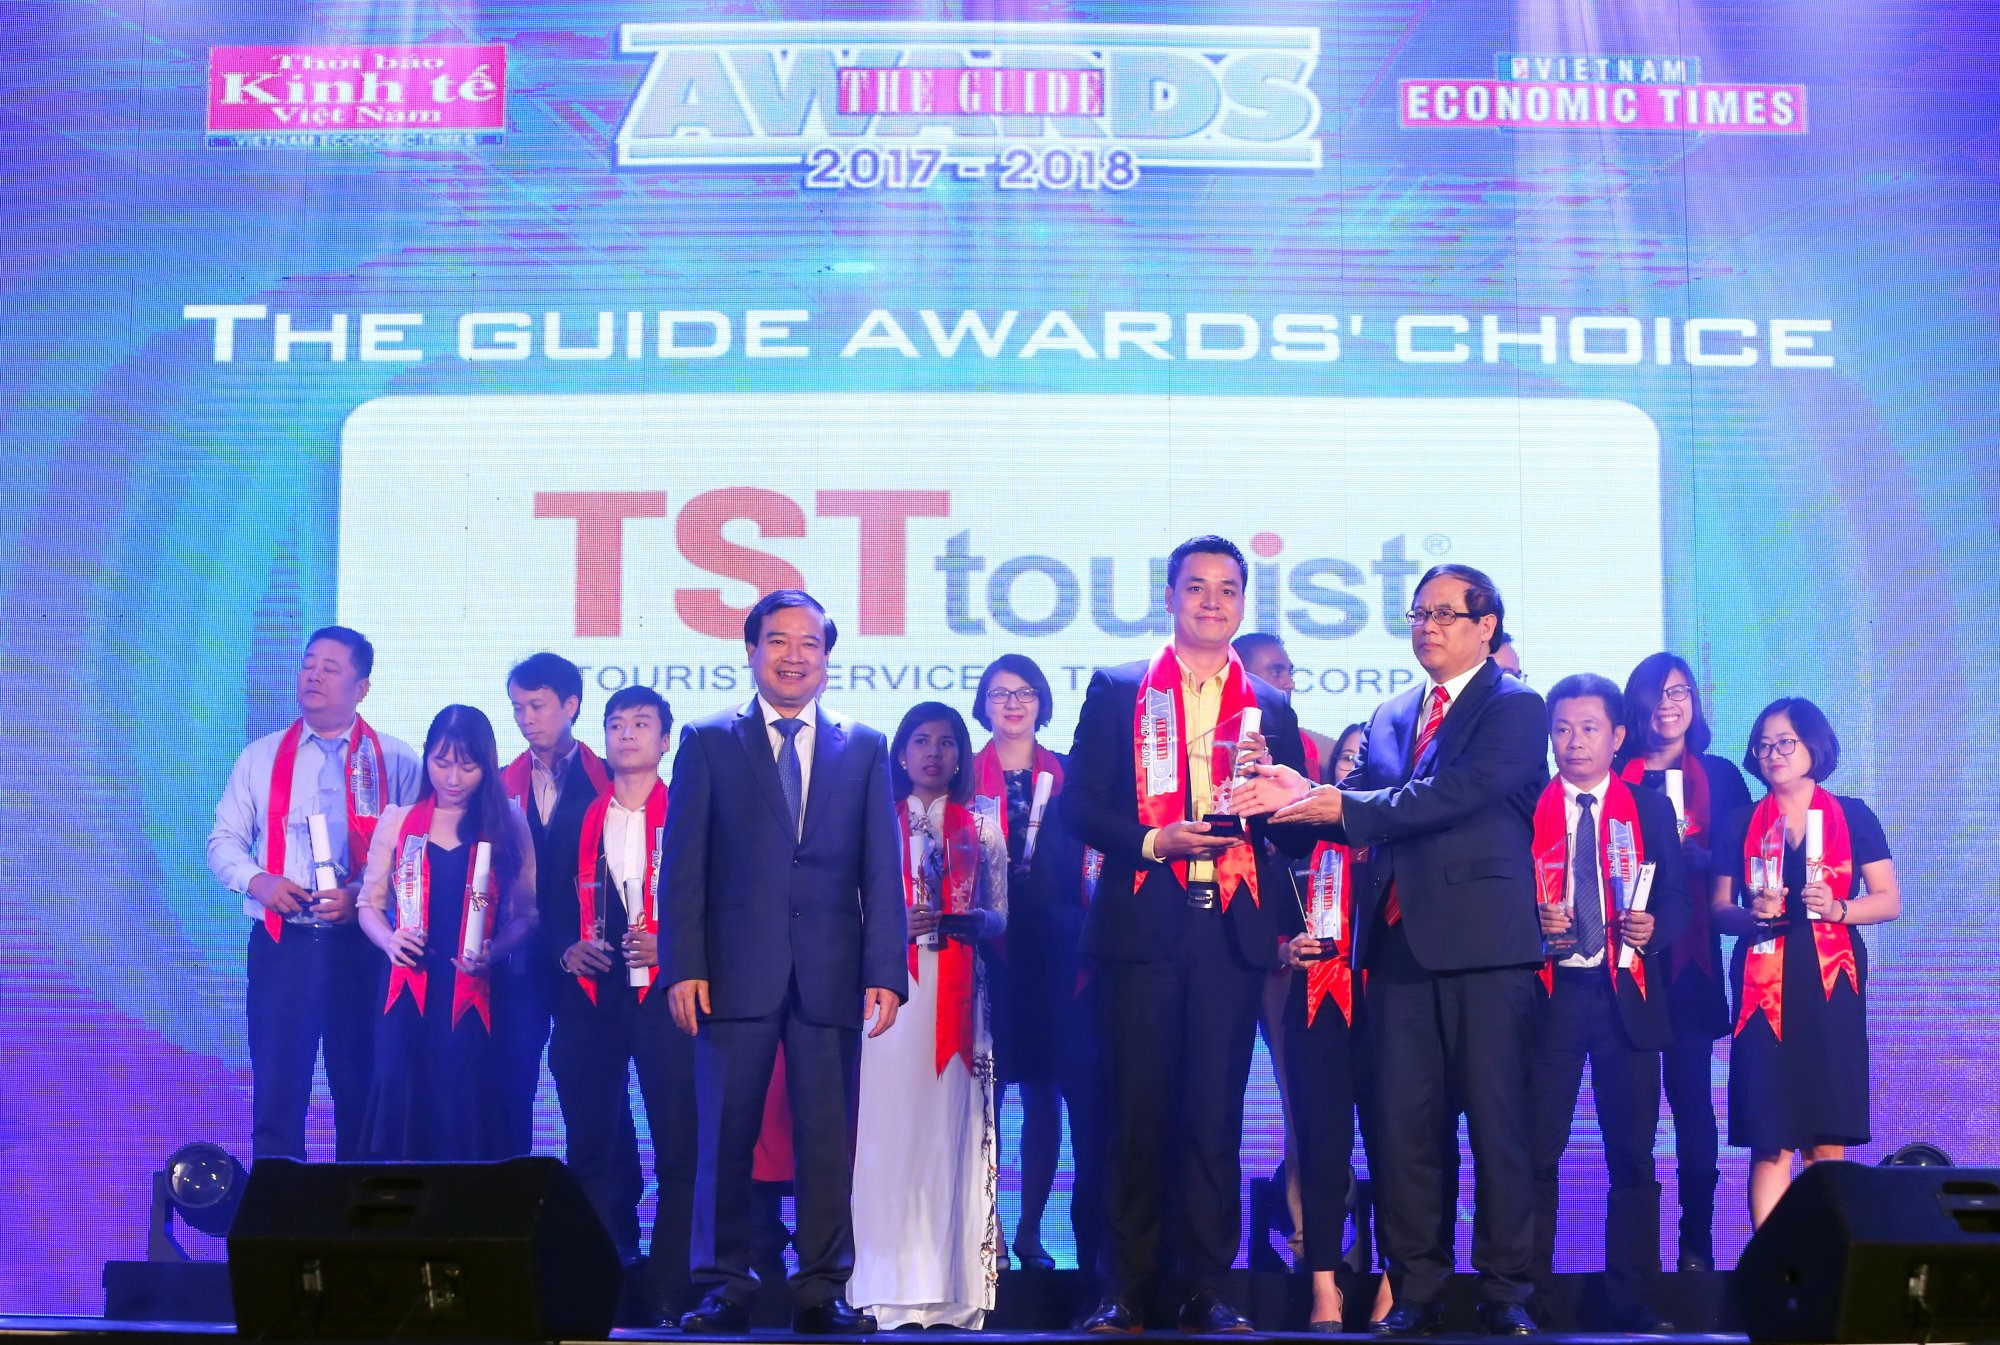 Ong_Nguyen_Van_Thi_nhan_giai_thuong_The_Guide_Awards_2017_-_2018